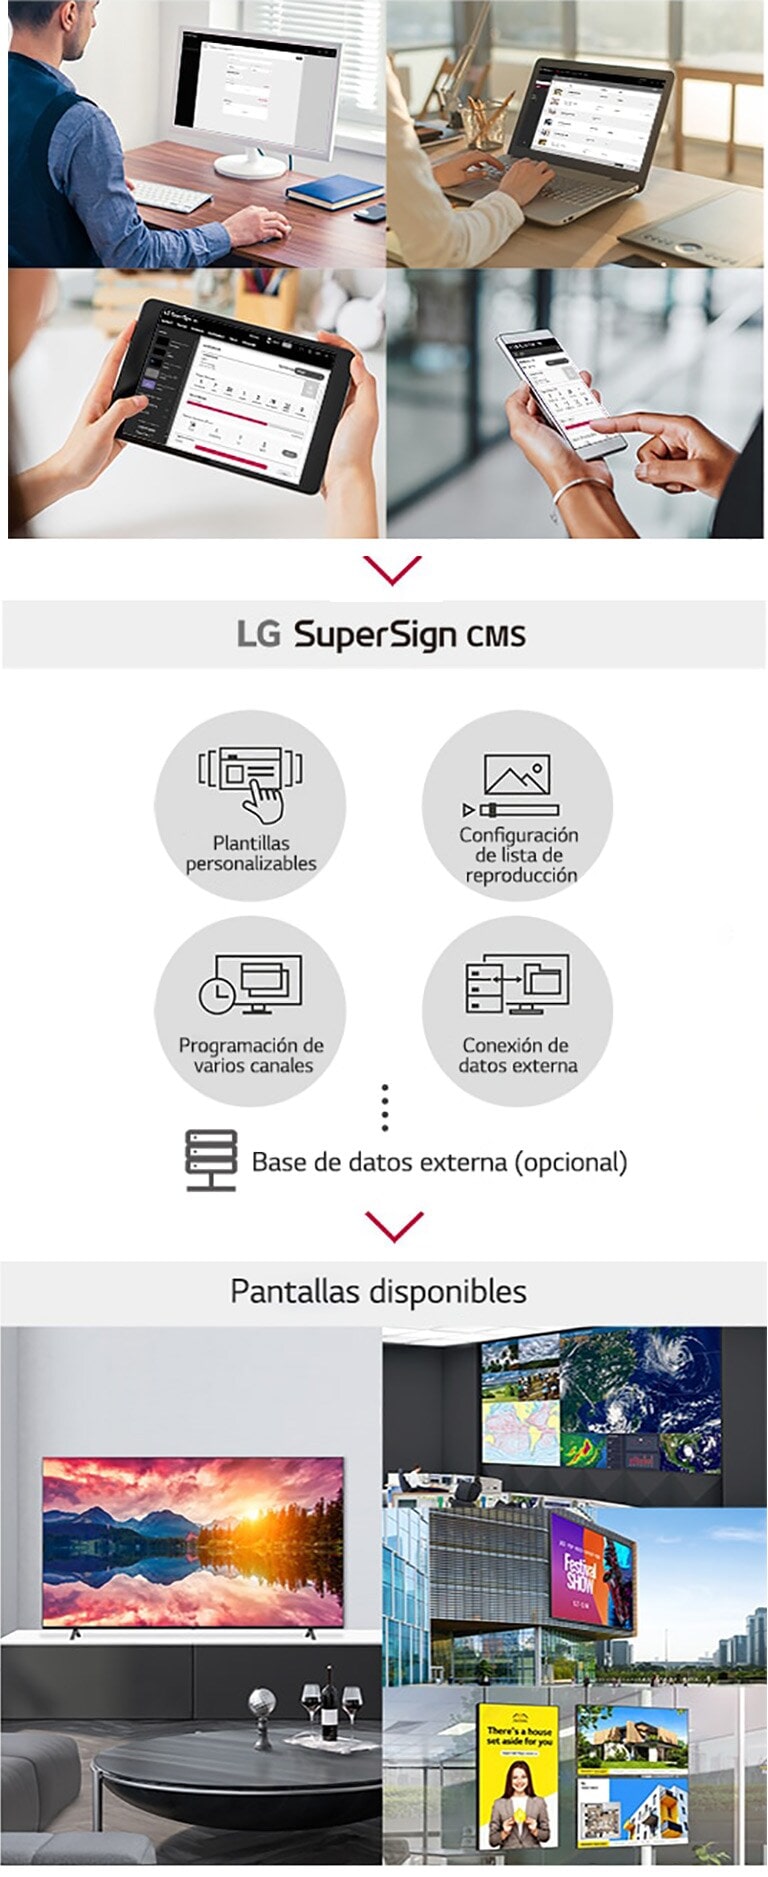 Múltiples administradores pueden acceder a SuperSign CMS de LG a través de una computadora, computadora portátil, una tableta y dispositivos móviles para crear, regular y distribuir contenido multimedia digital adaptado a una amplia gama de pantallas.